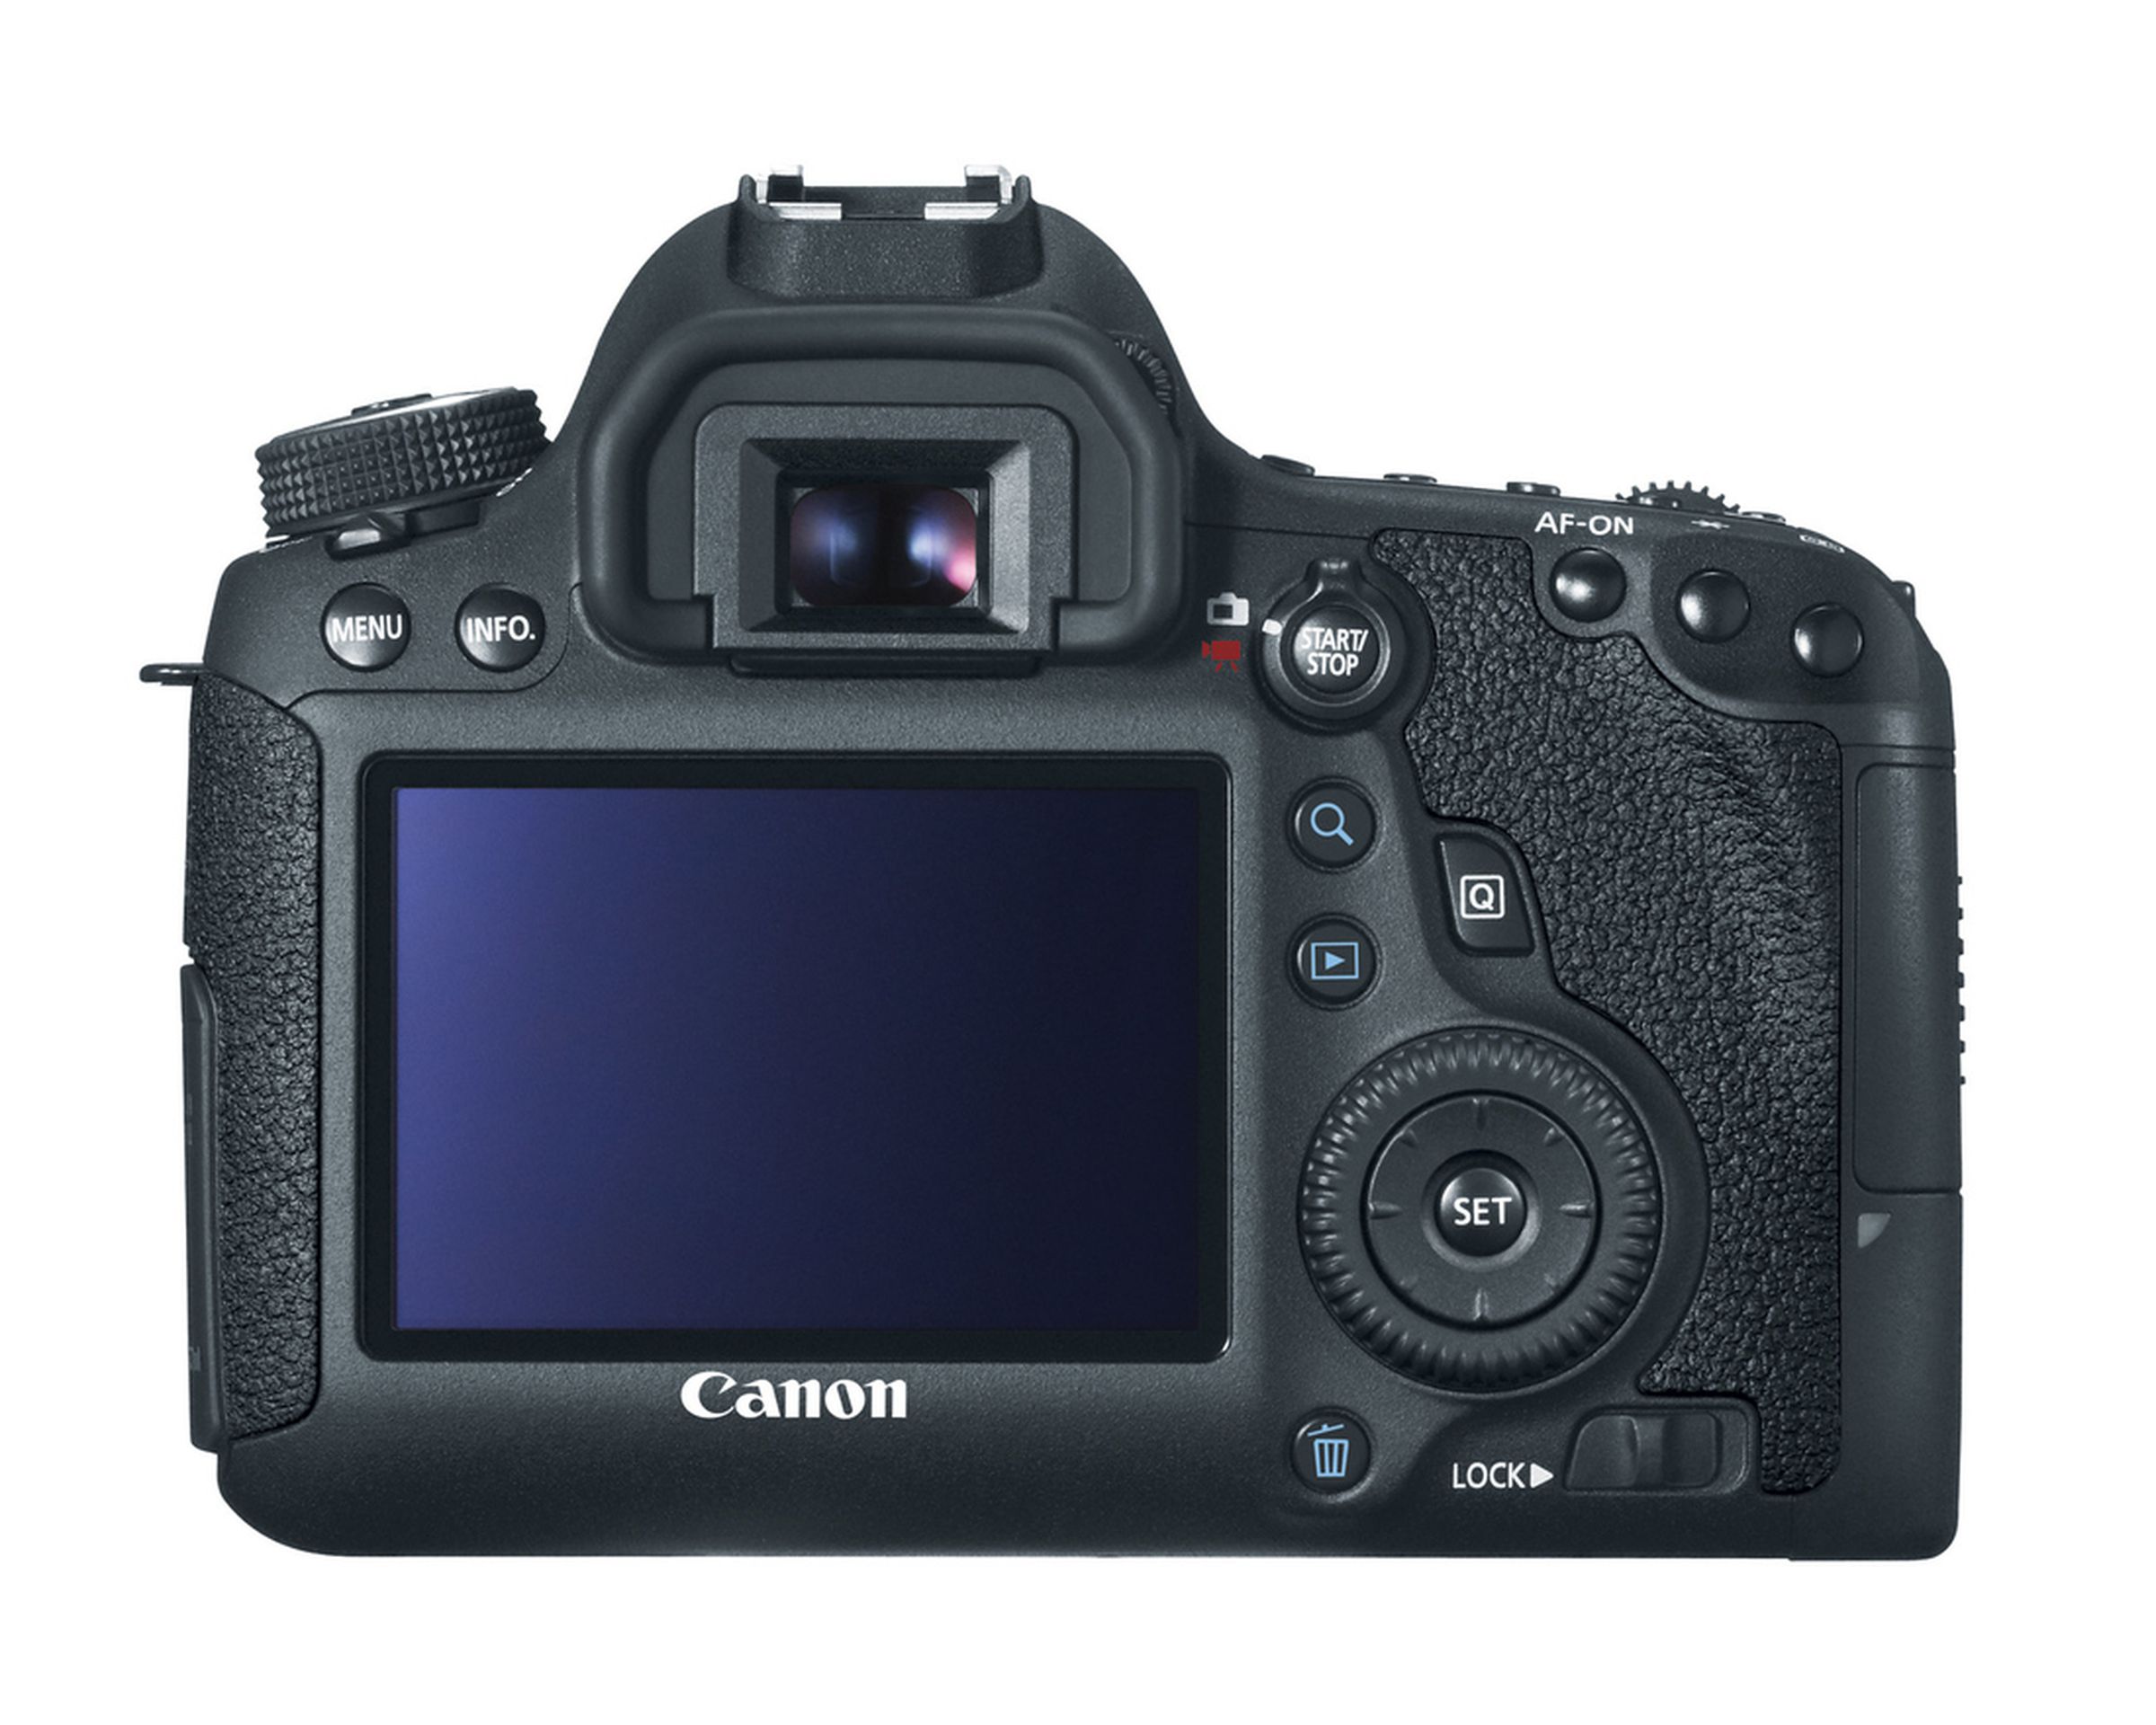 Canon EOS 6D press photos